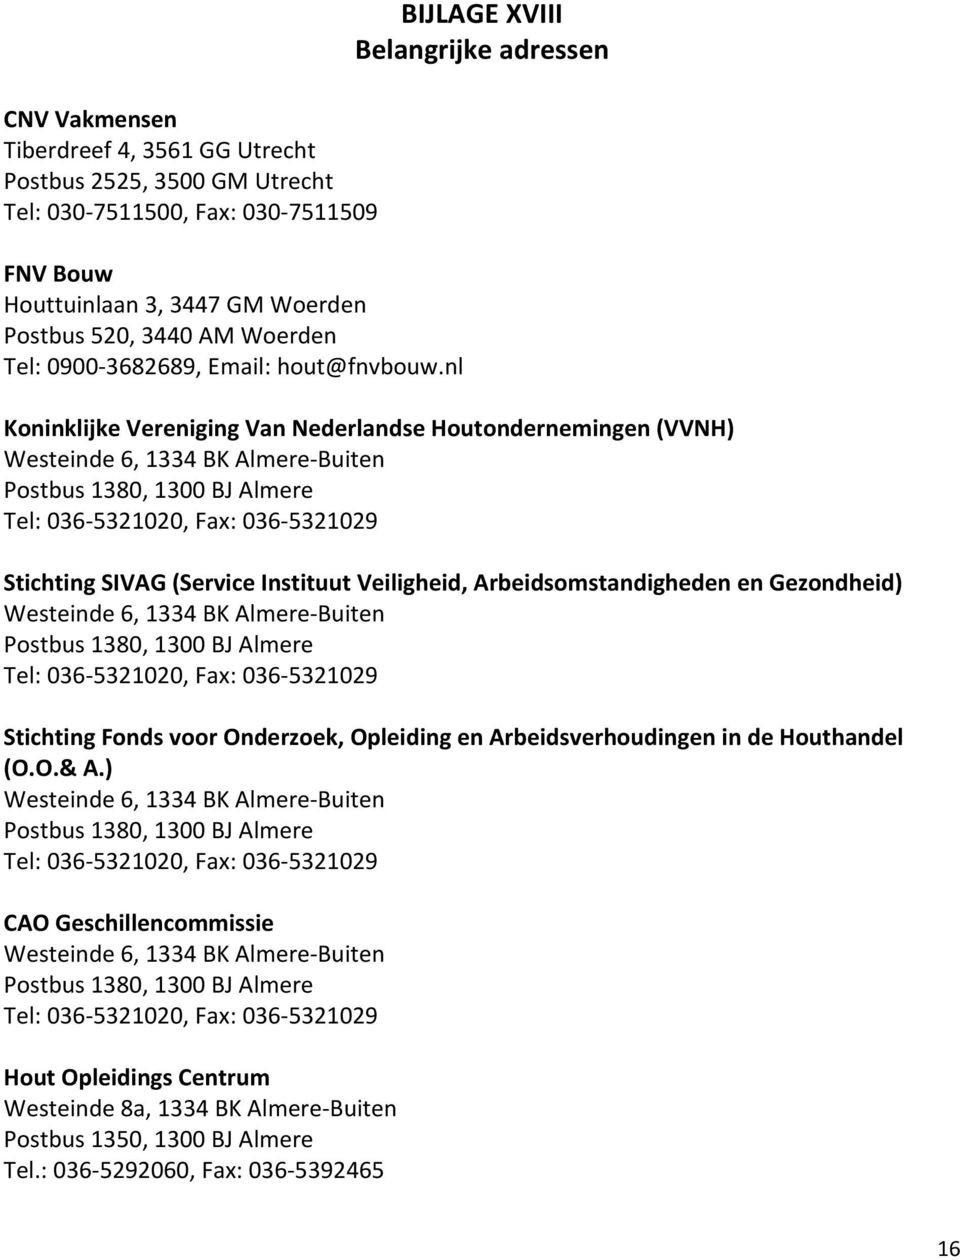 nl BIJLAGE XVIII Belangrijke adressen Koninklijke Vereniging Van Nederlandse Houtondernemingen (VVNH) Westeinde 6, 1334 BK Almere Buiten Postbus 1380, 1300 BJ Almere Tel: 036 5321020, Fax: 036